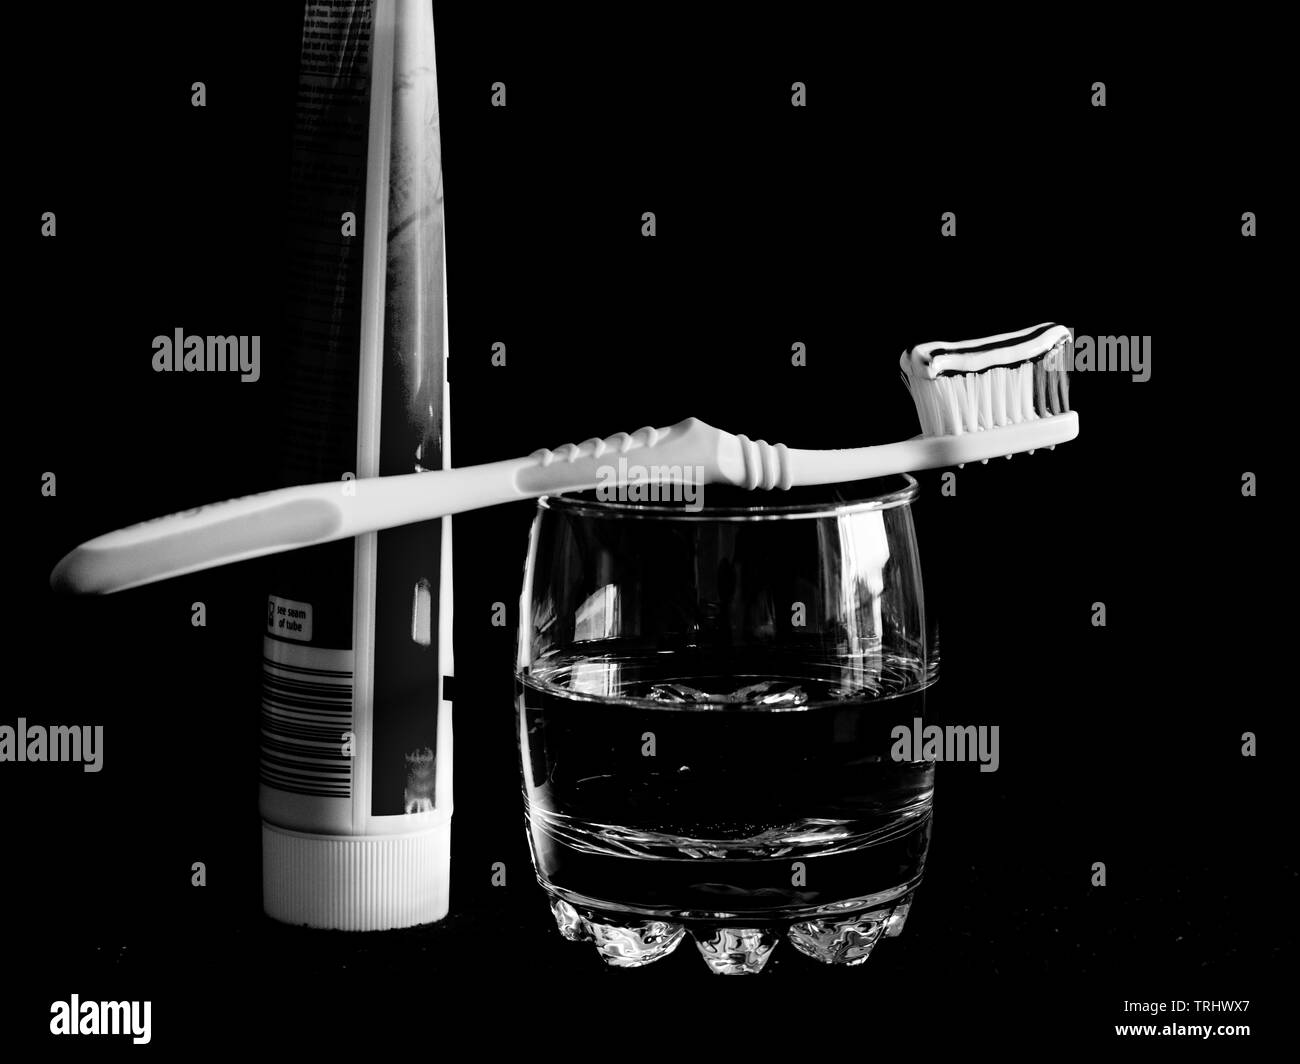 Zähne putzen gehört zu den alltäglichen Handlungen , hier in schwarz-weiß als Kunstobjekt Stock Photo